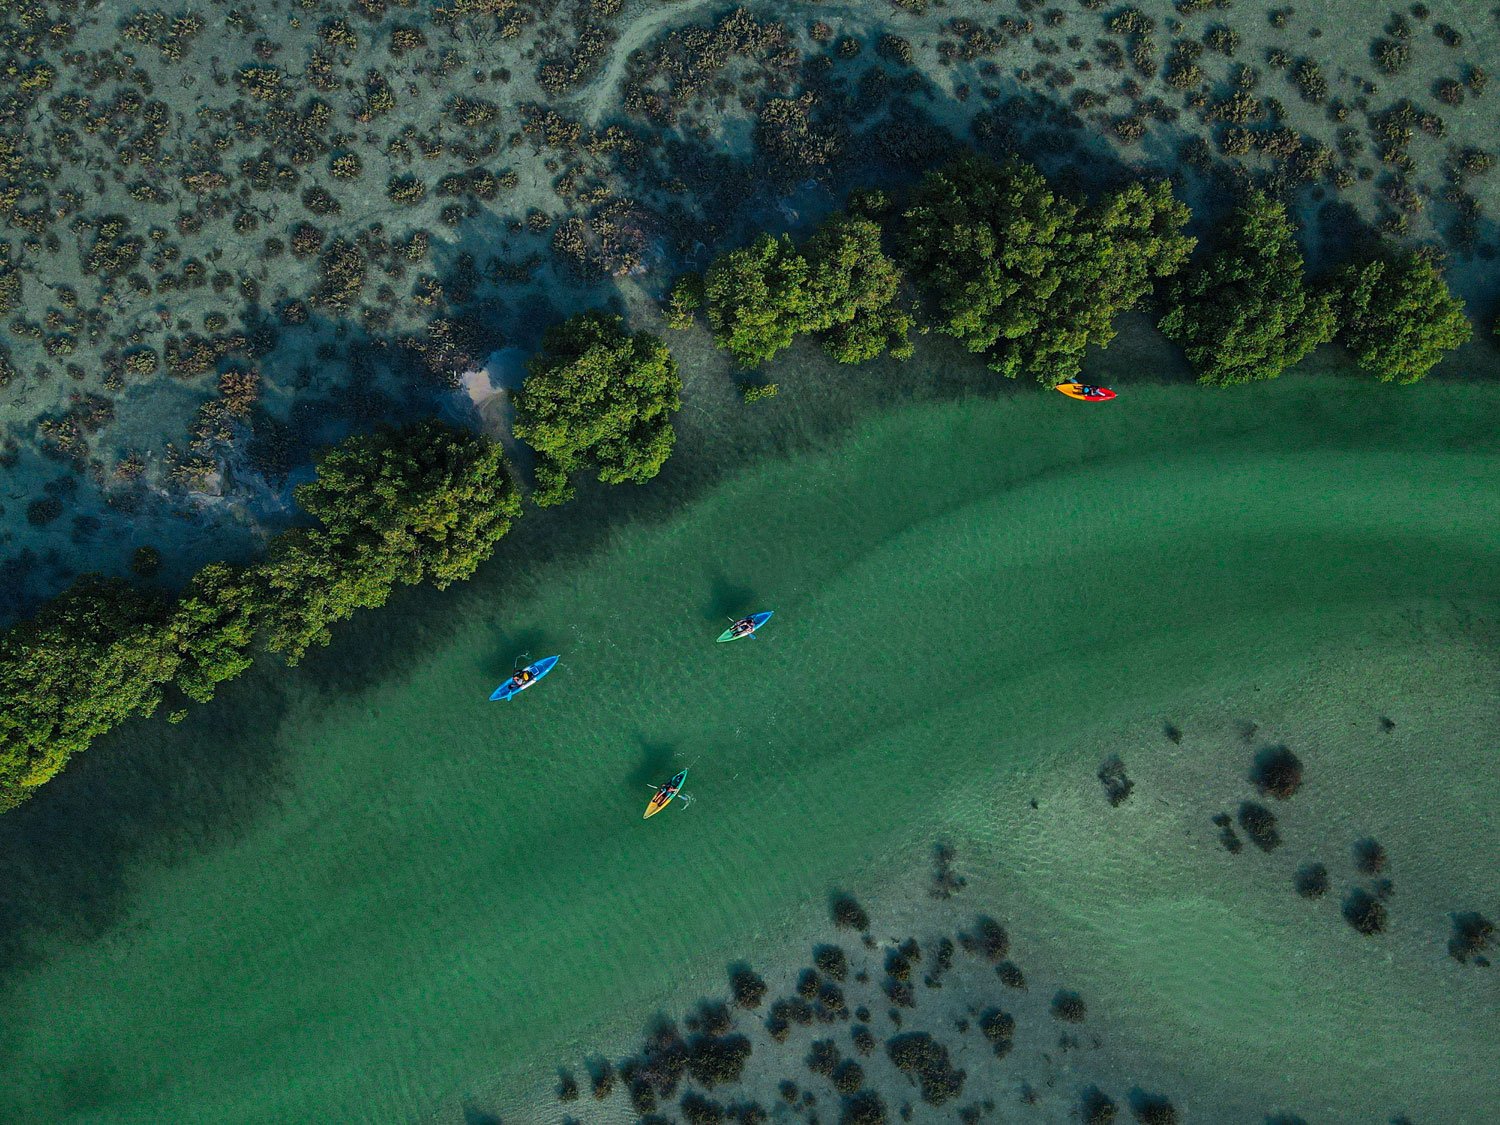 Kayak through an ecological marvel at Jubail Mangrove Park